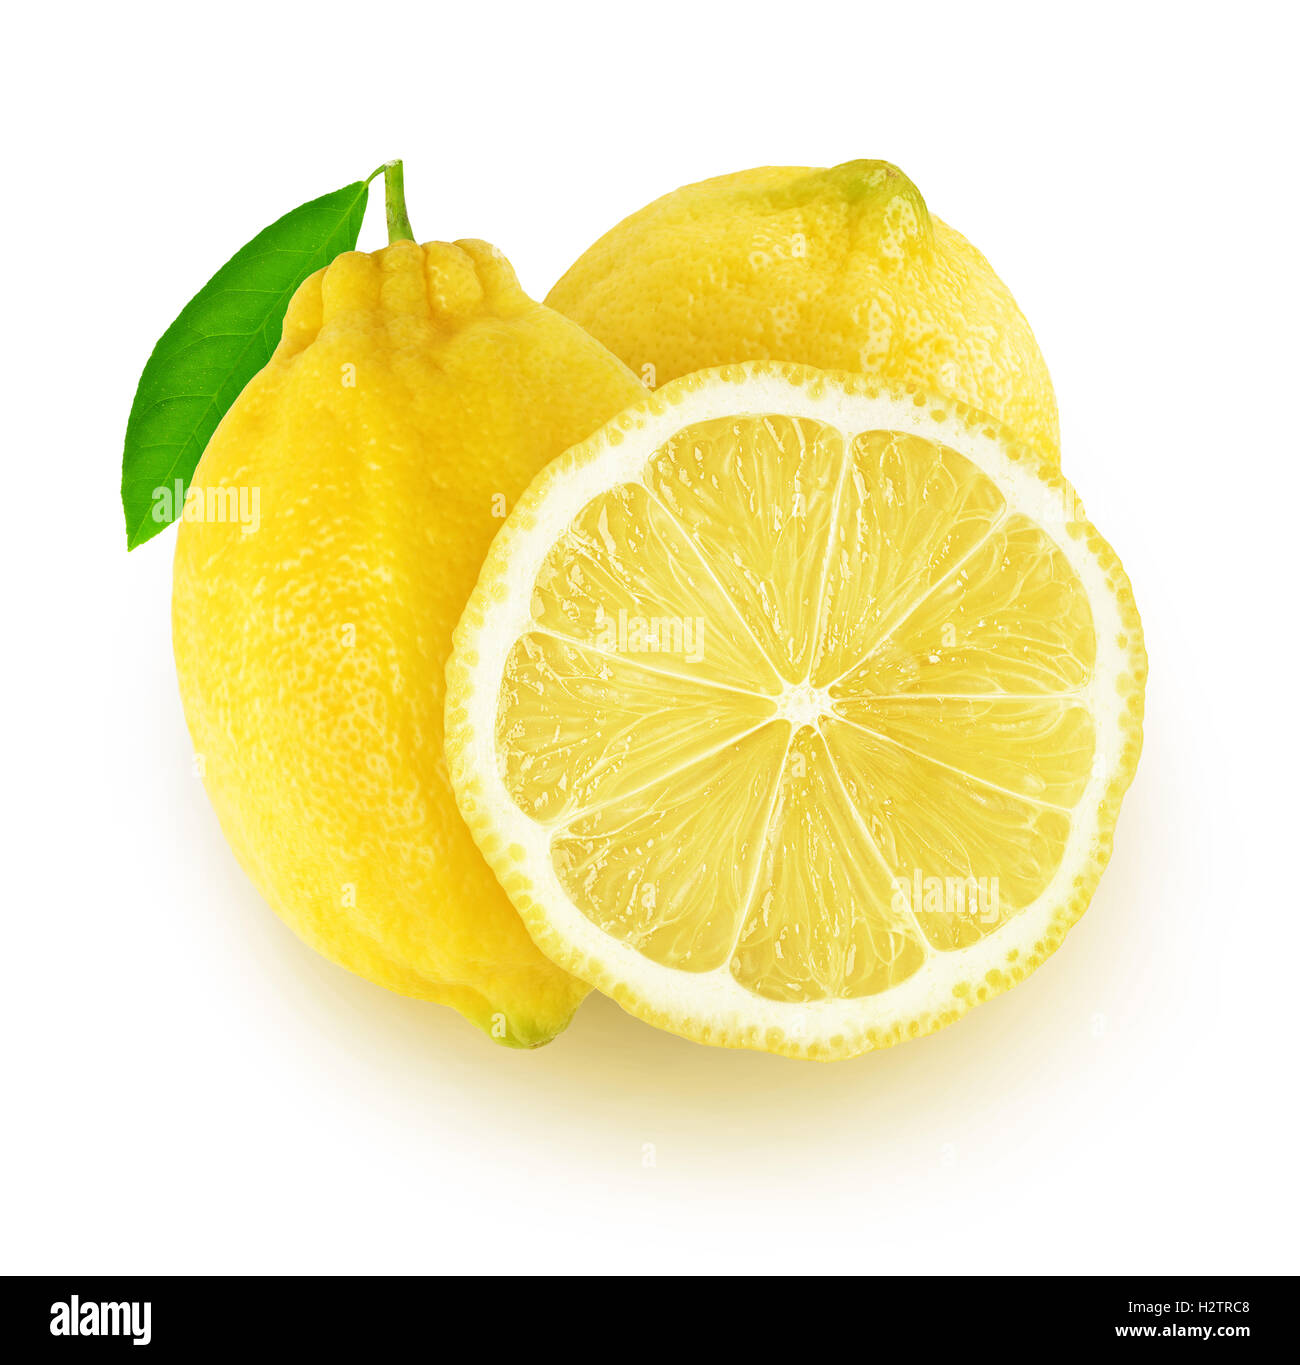 Isolato di limoni. Due frutti di limone e una fetta isolato su sfondo bianco con tracciato di ritaglio Foto Stock